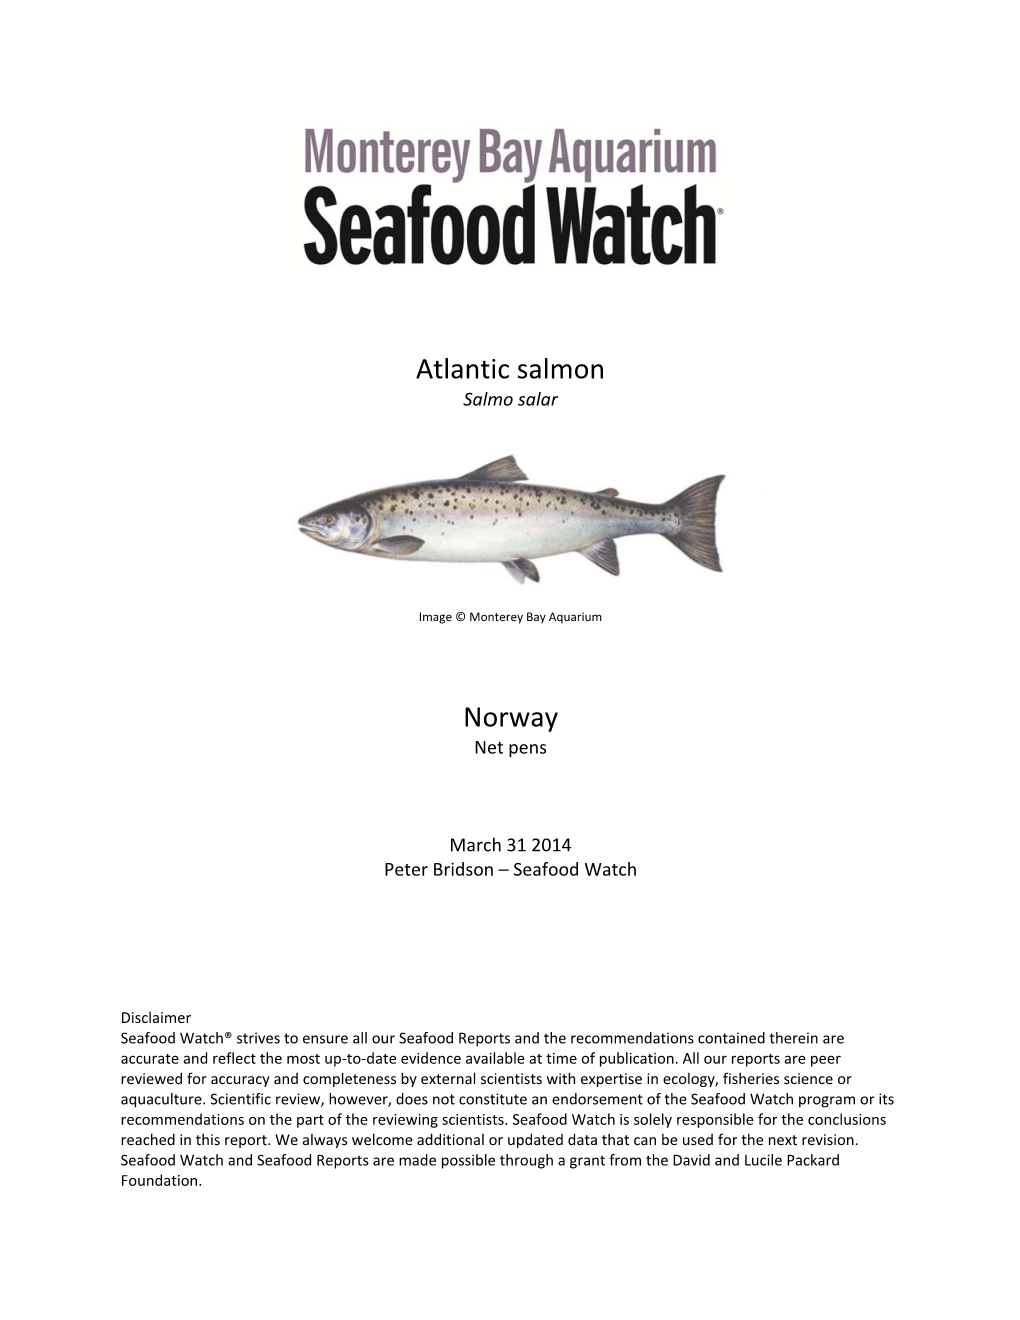 Atlantic Salmon Norway